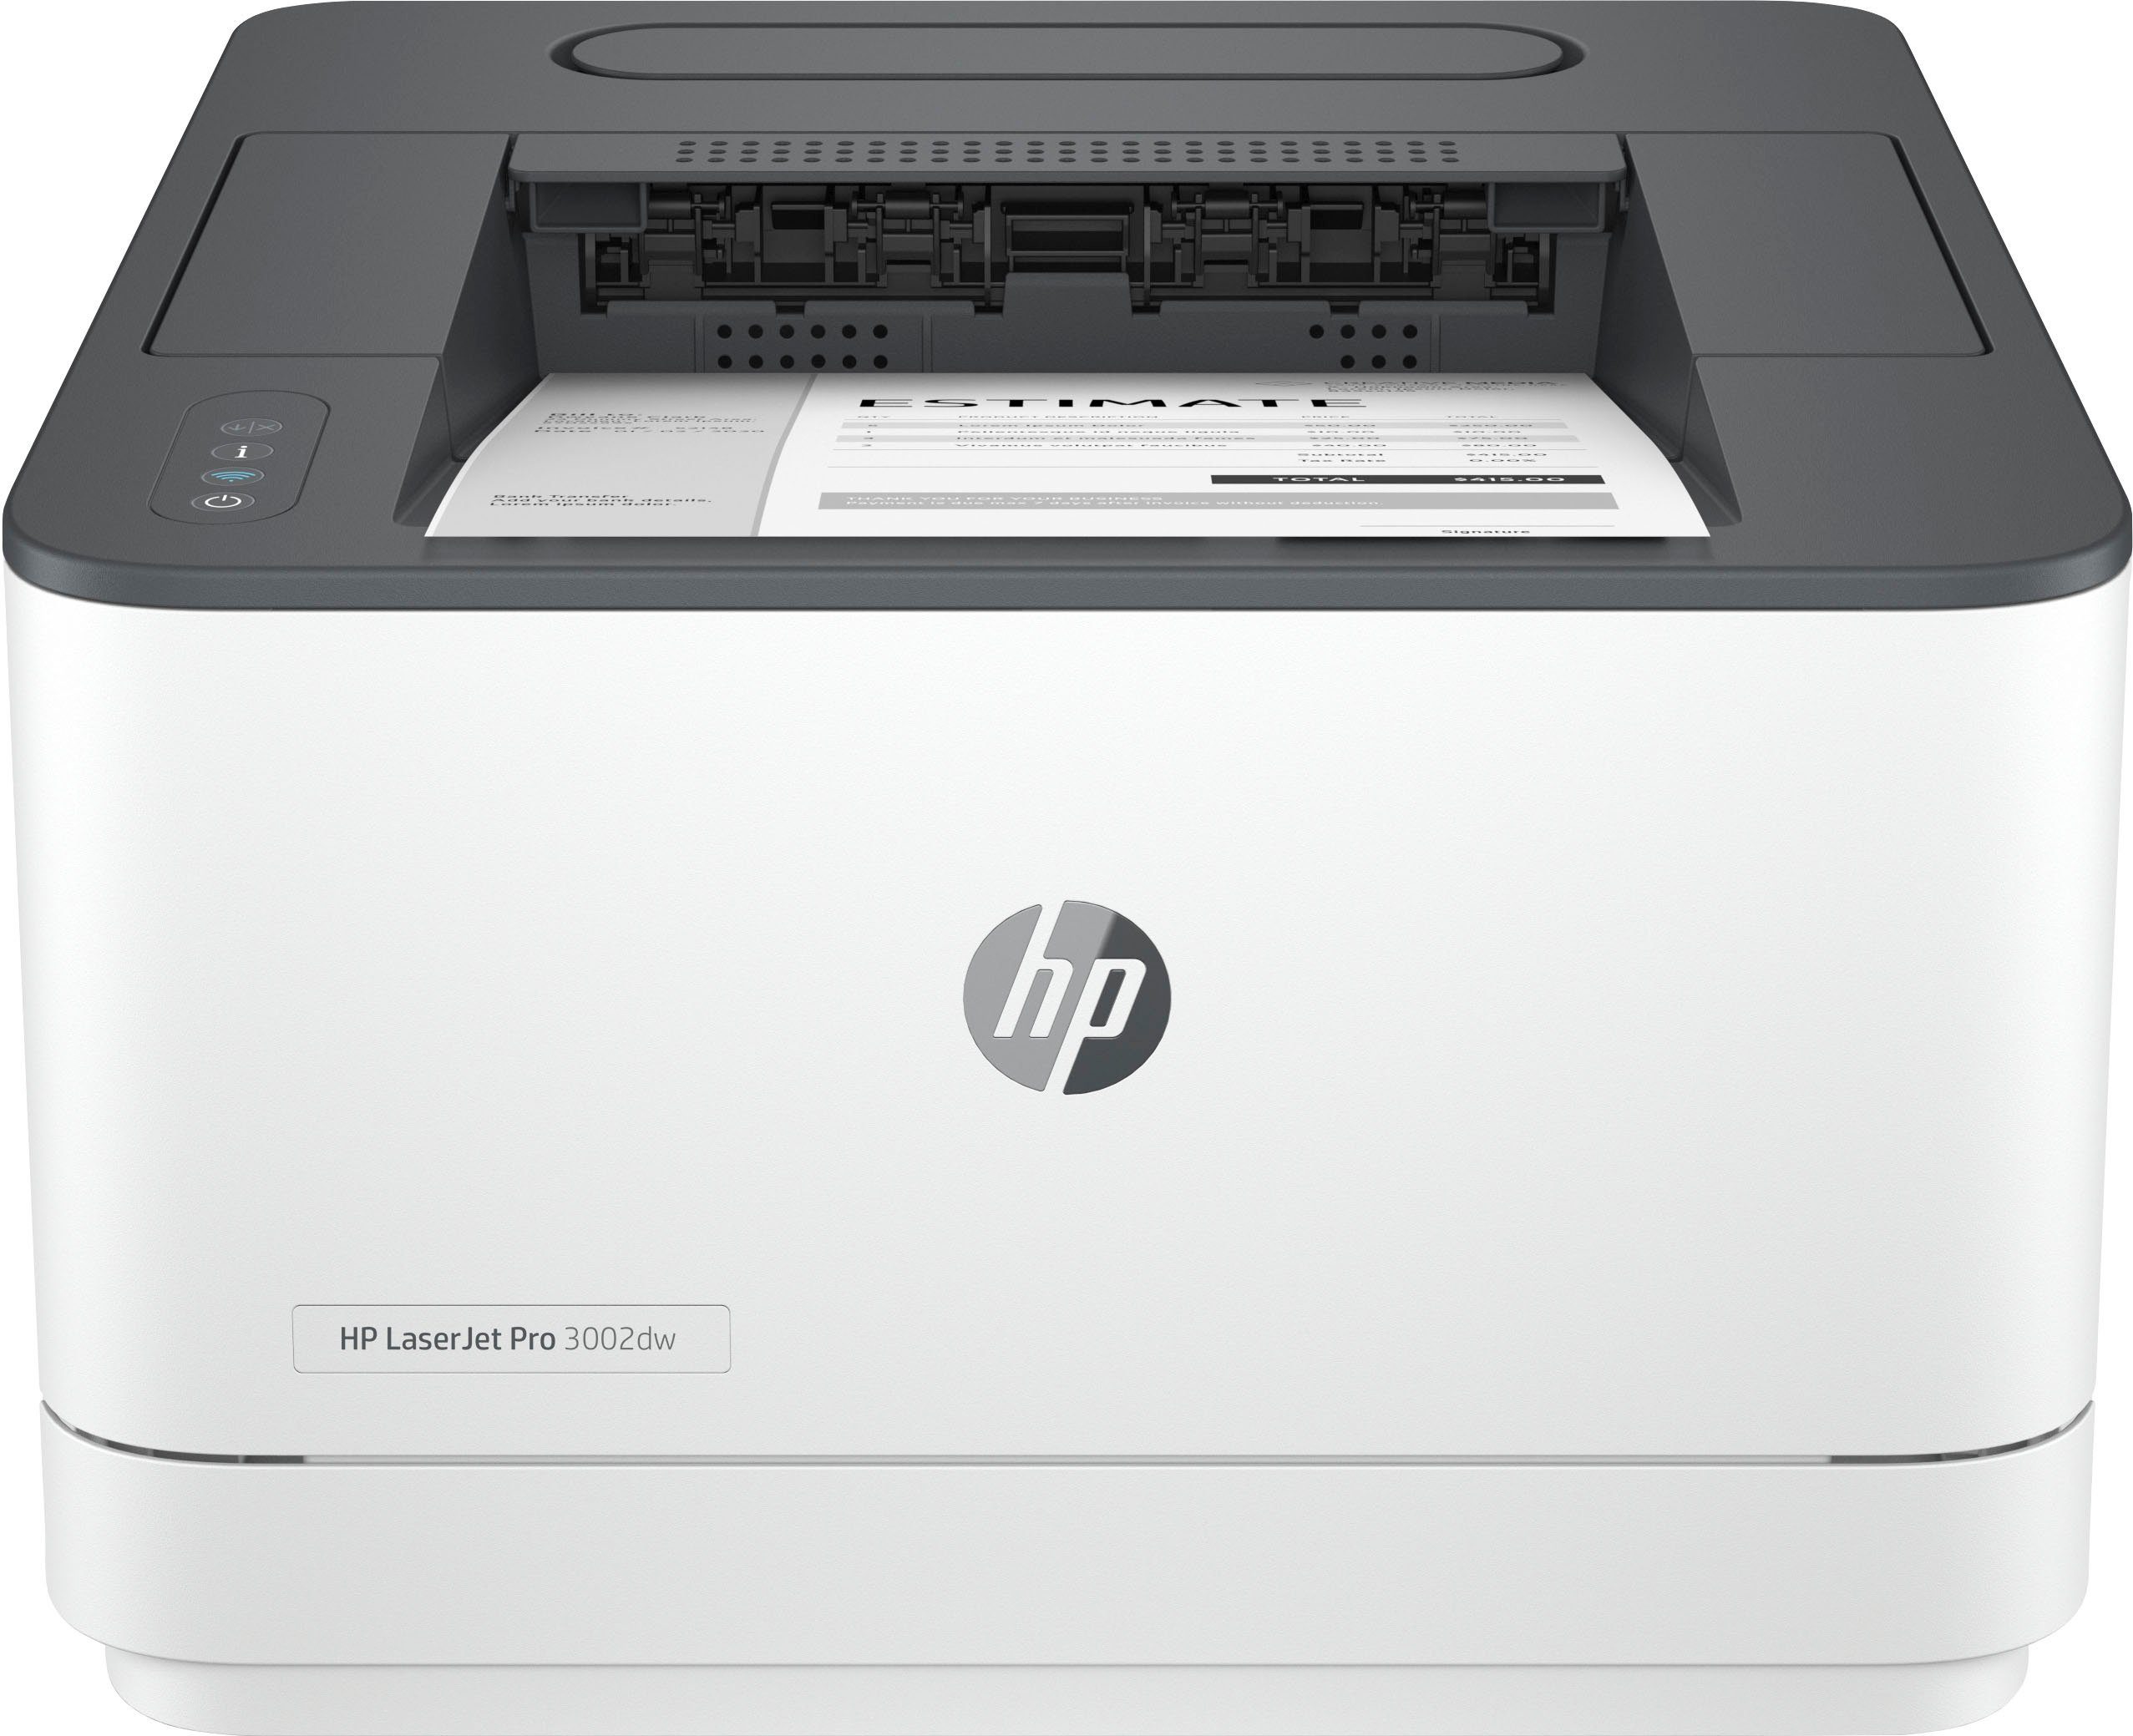 Ink LAN Laserdrucker, LaserJet Pro kompatibel) HP WLAN Instant 3002dw (Bluetooth, (Ethernet), (Wi-Fi), HP